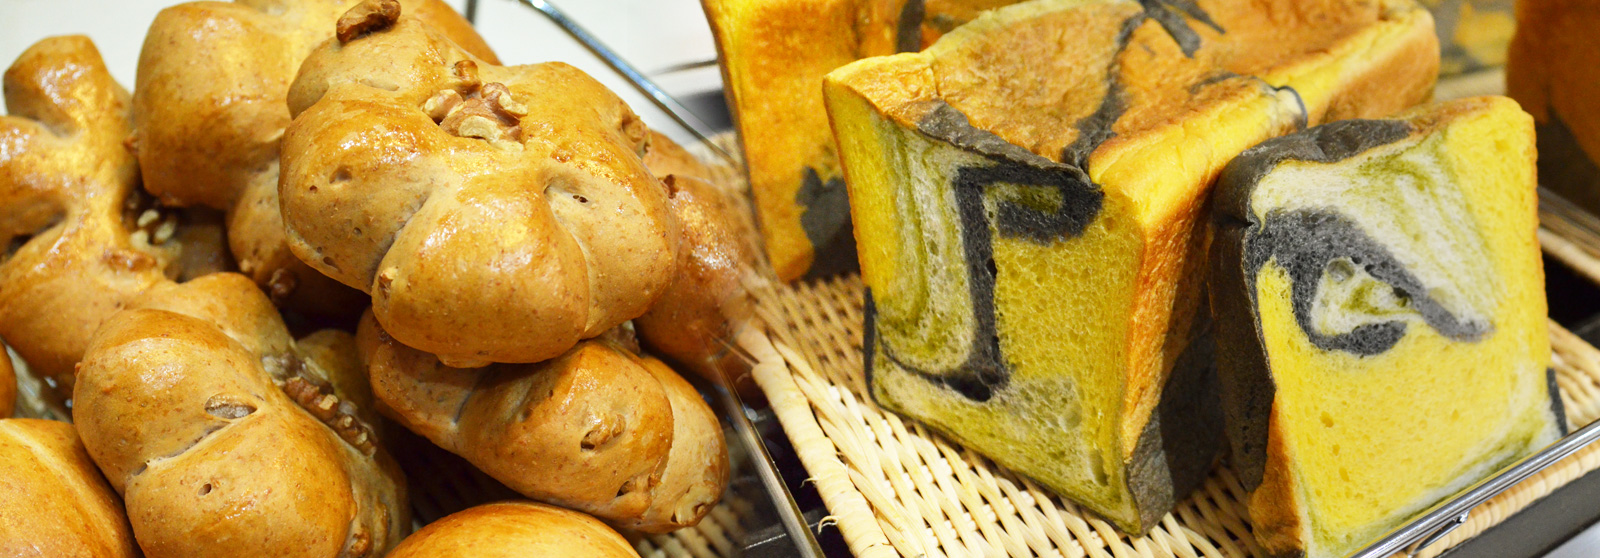 名古屋のカフェK&M 自慢の手作りパン